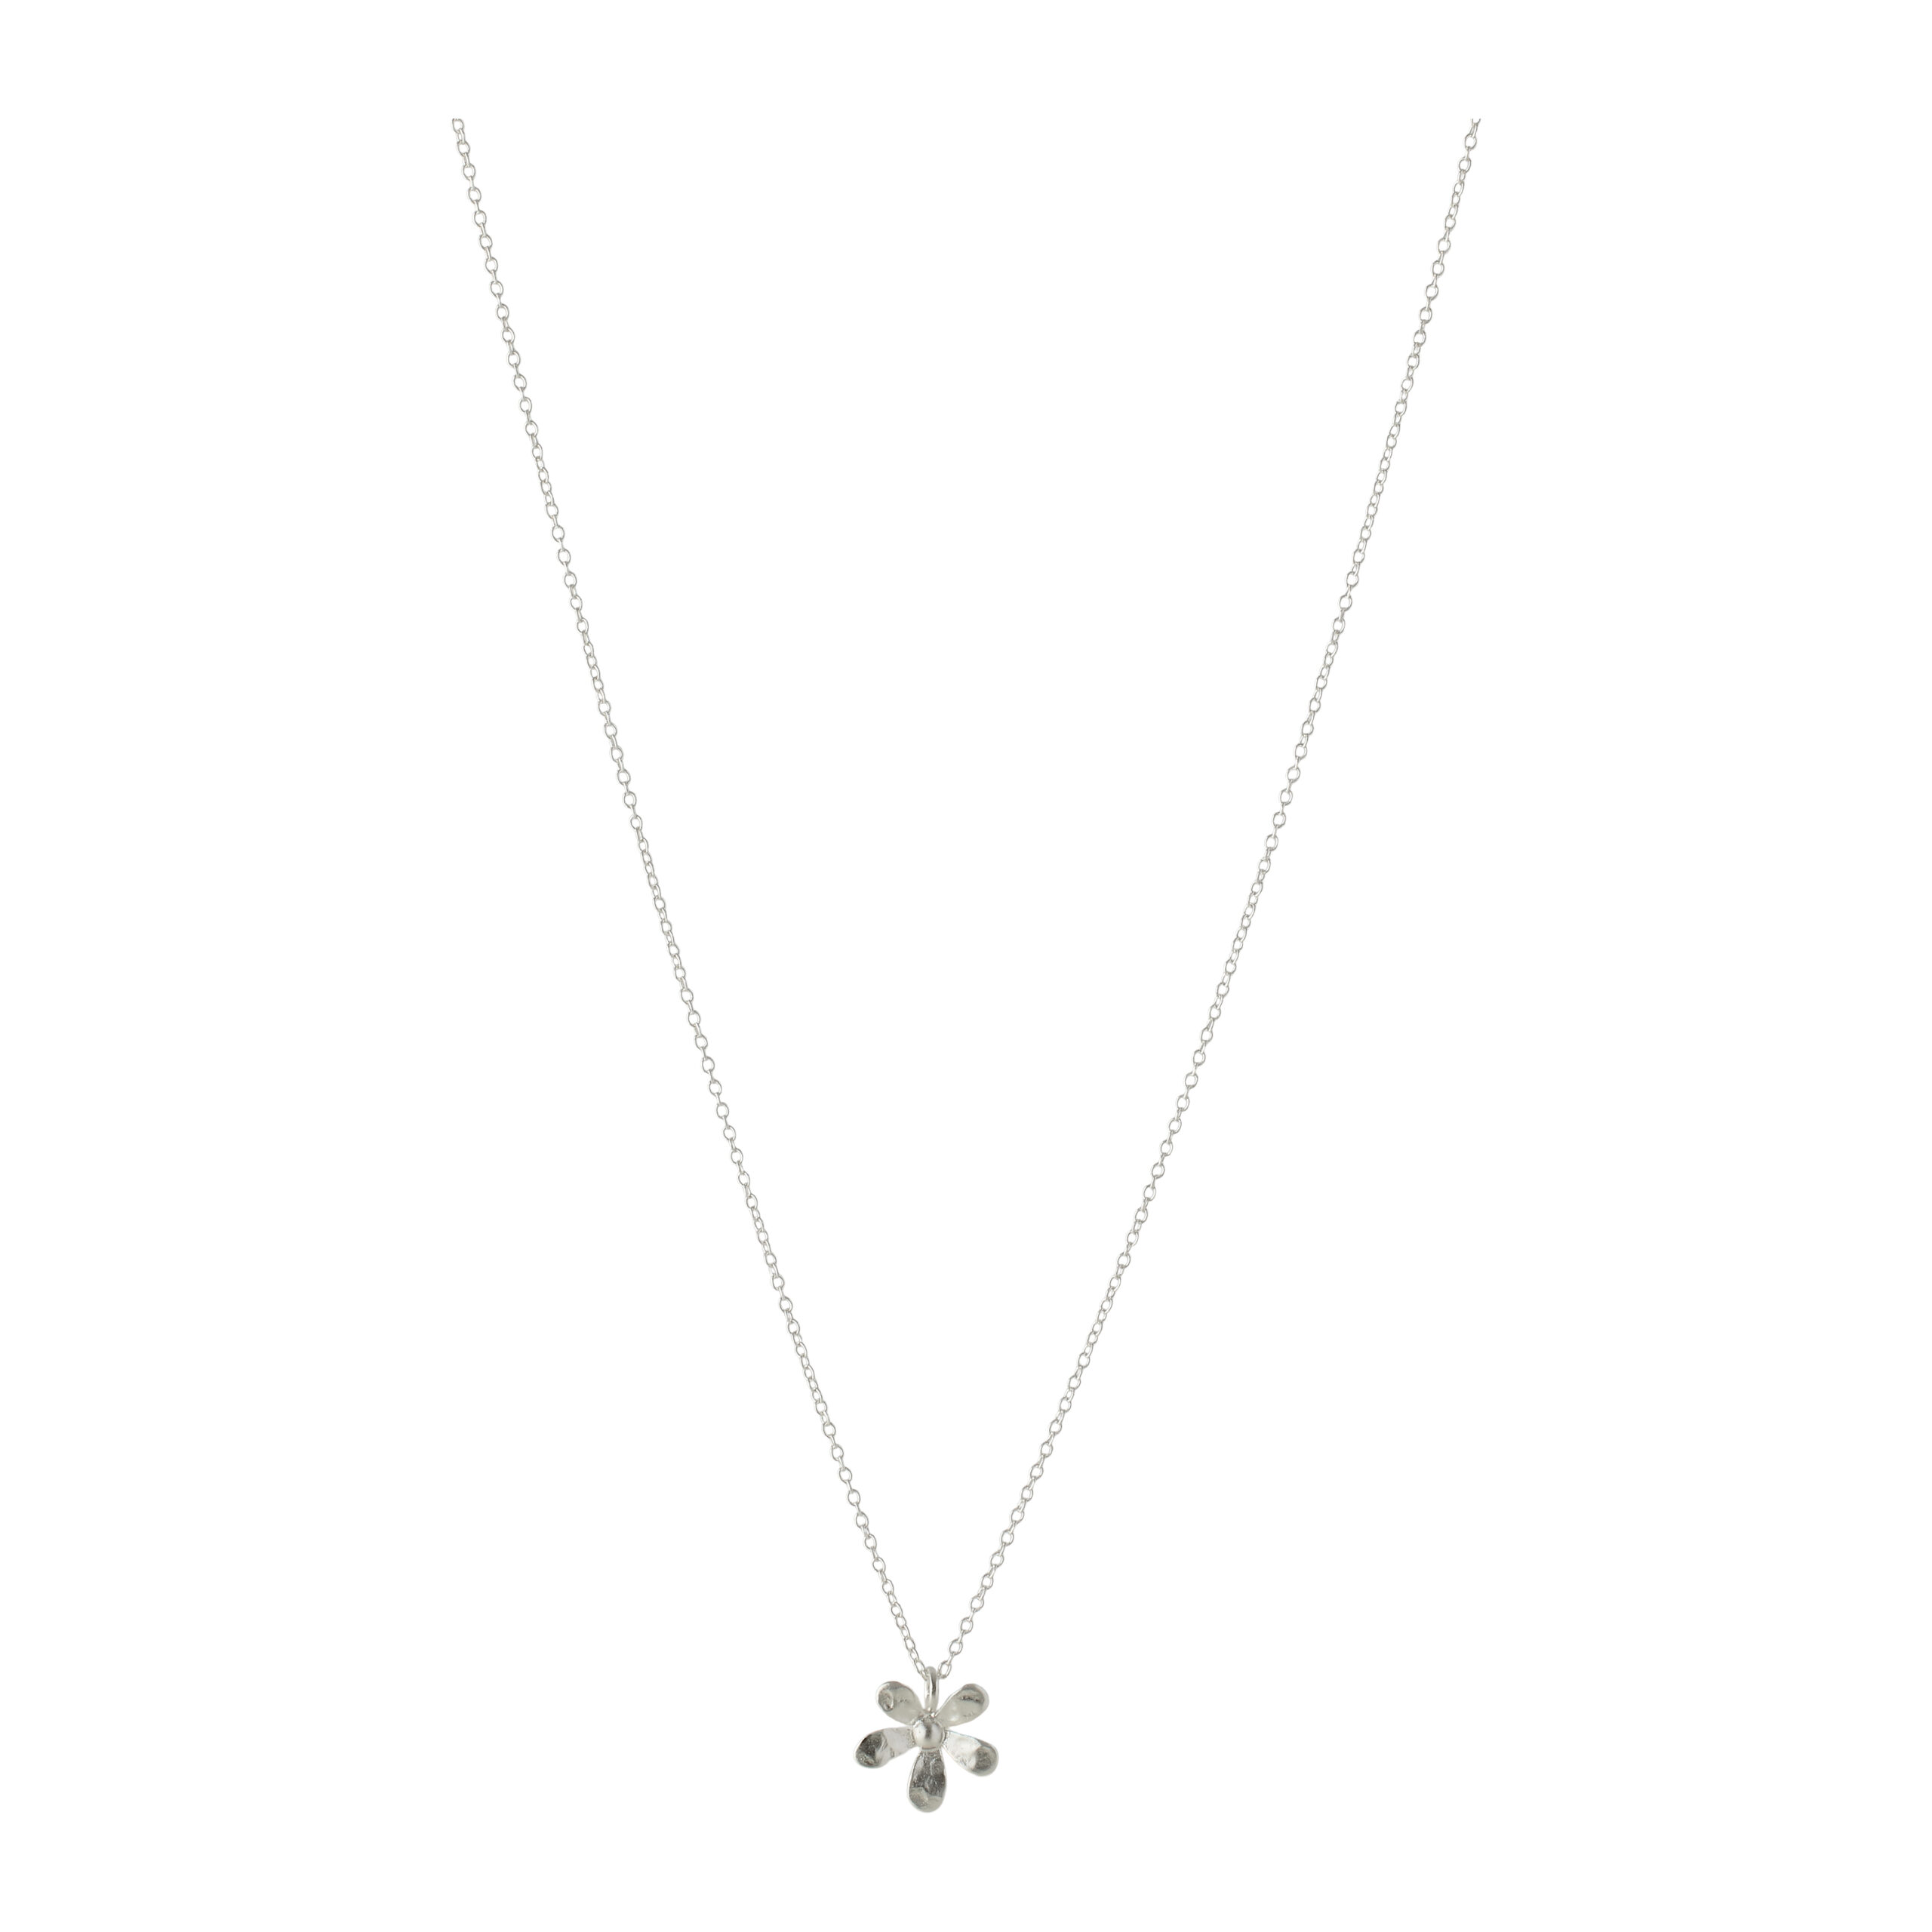 Pernille Corydon Wild Poppy Necklace - Naturligt inspireret halskæde med fin silkebørstet blomst. Tilgængelig i sølv og forgyldt sølv, justerbar længde (42-46 cm